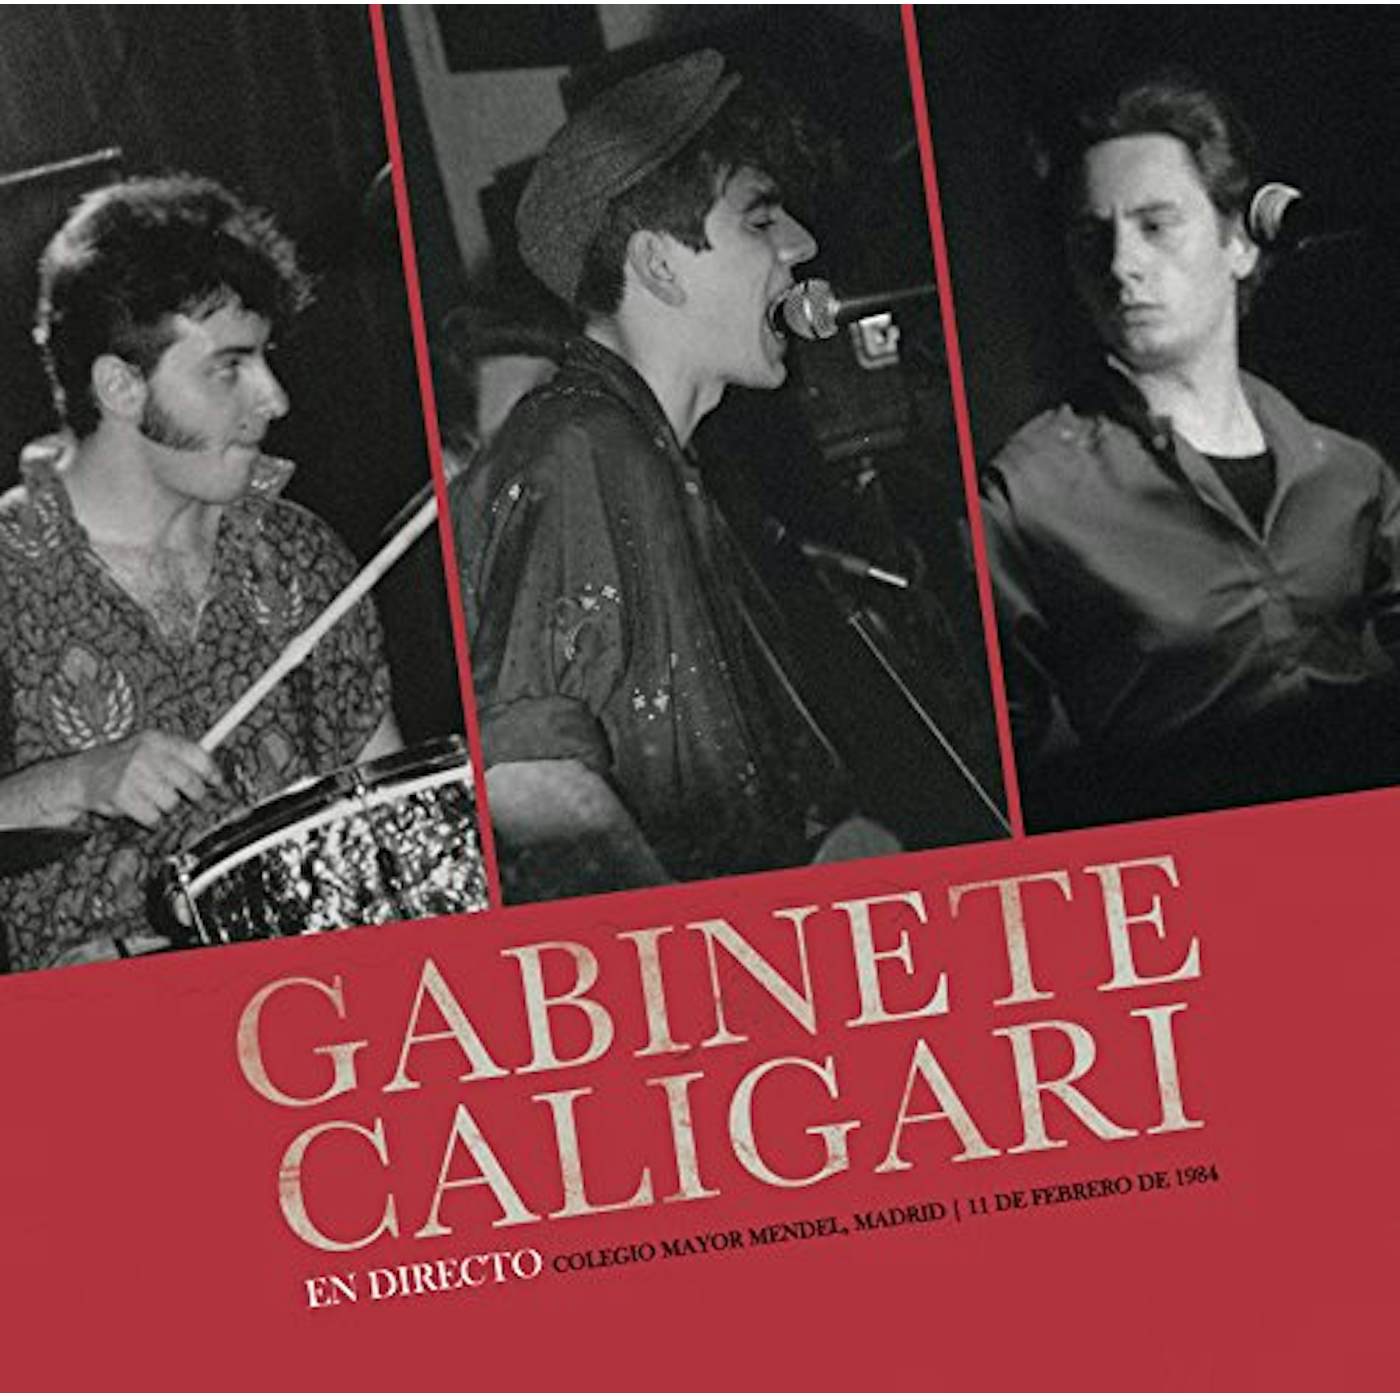 Gabinete Caligari EN MADRID DIRECTO 1984 Vinyl Record